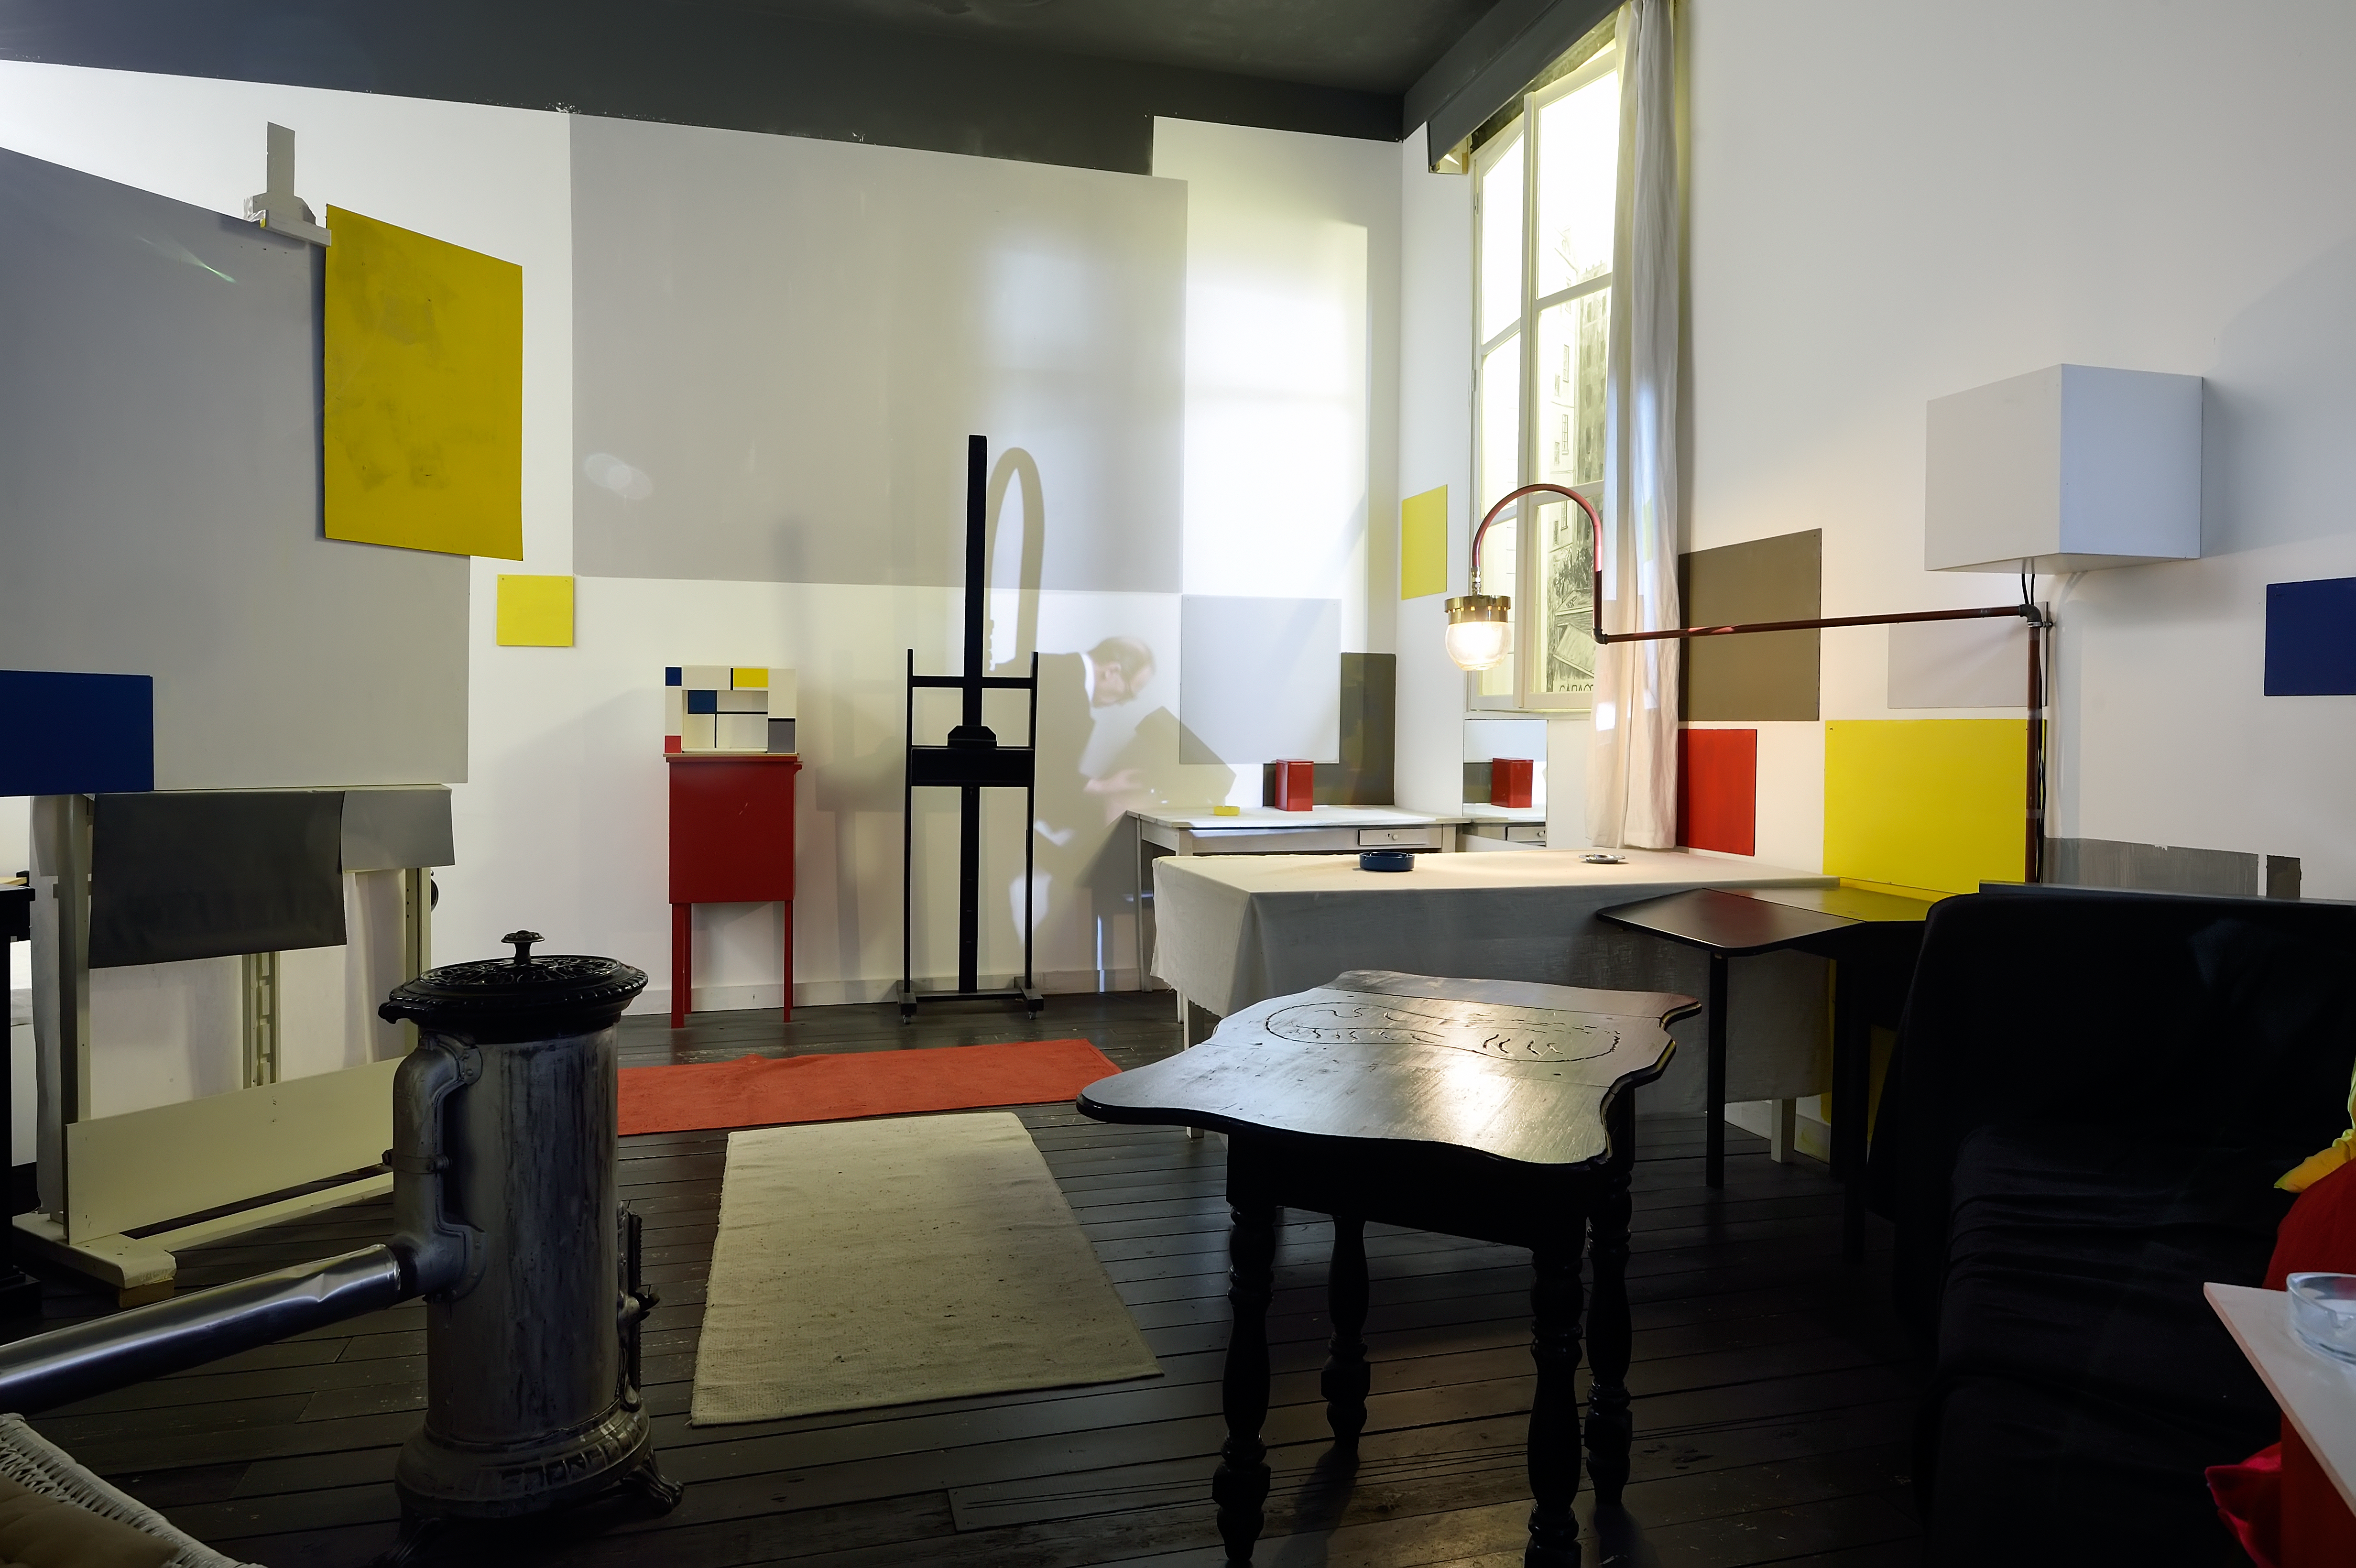 Reconstructed Parisian studio of Mondrian in Mondriaanhuis3 - Photo Mike Bink.jpg